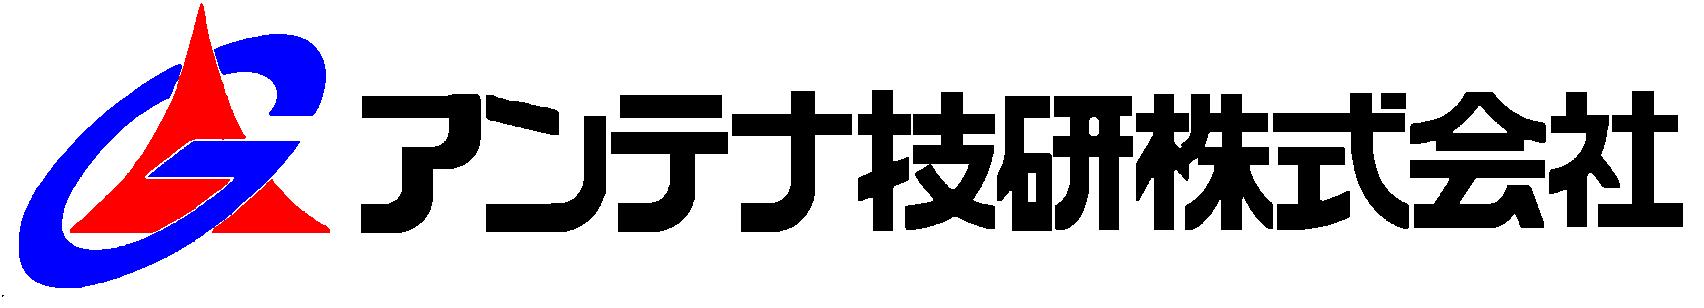 20120525-アンテナ技研株式会社.JPG